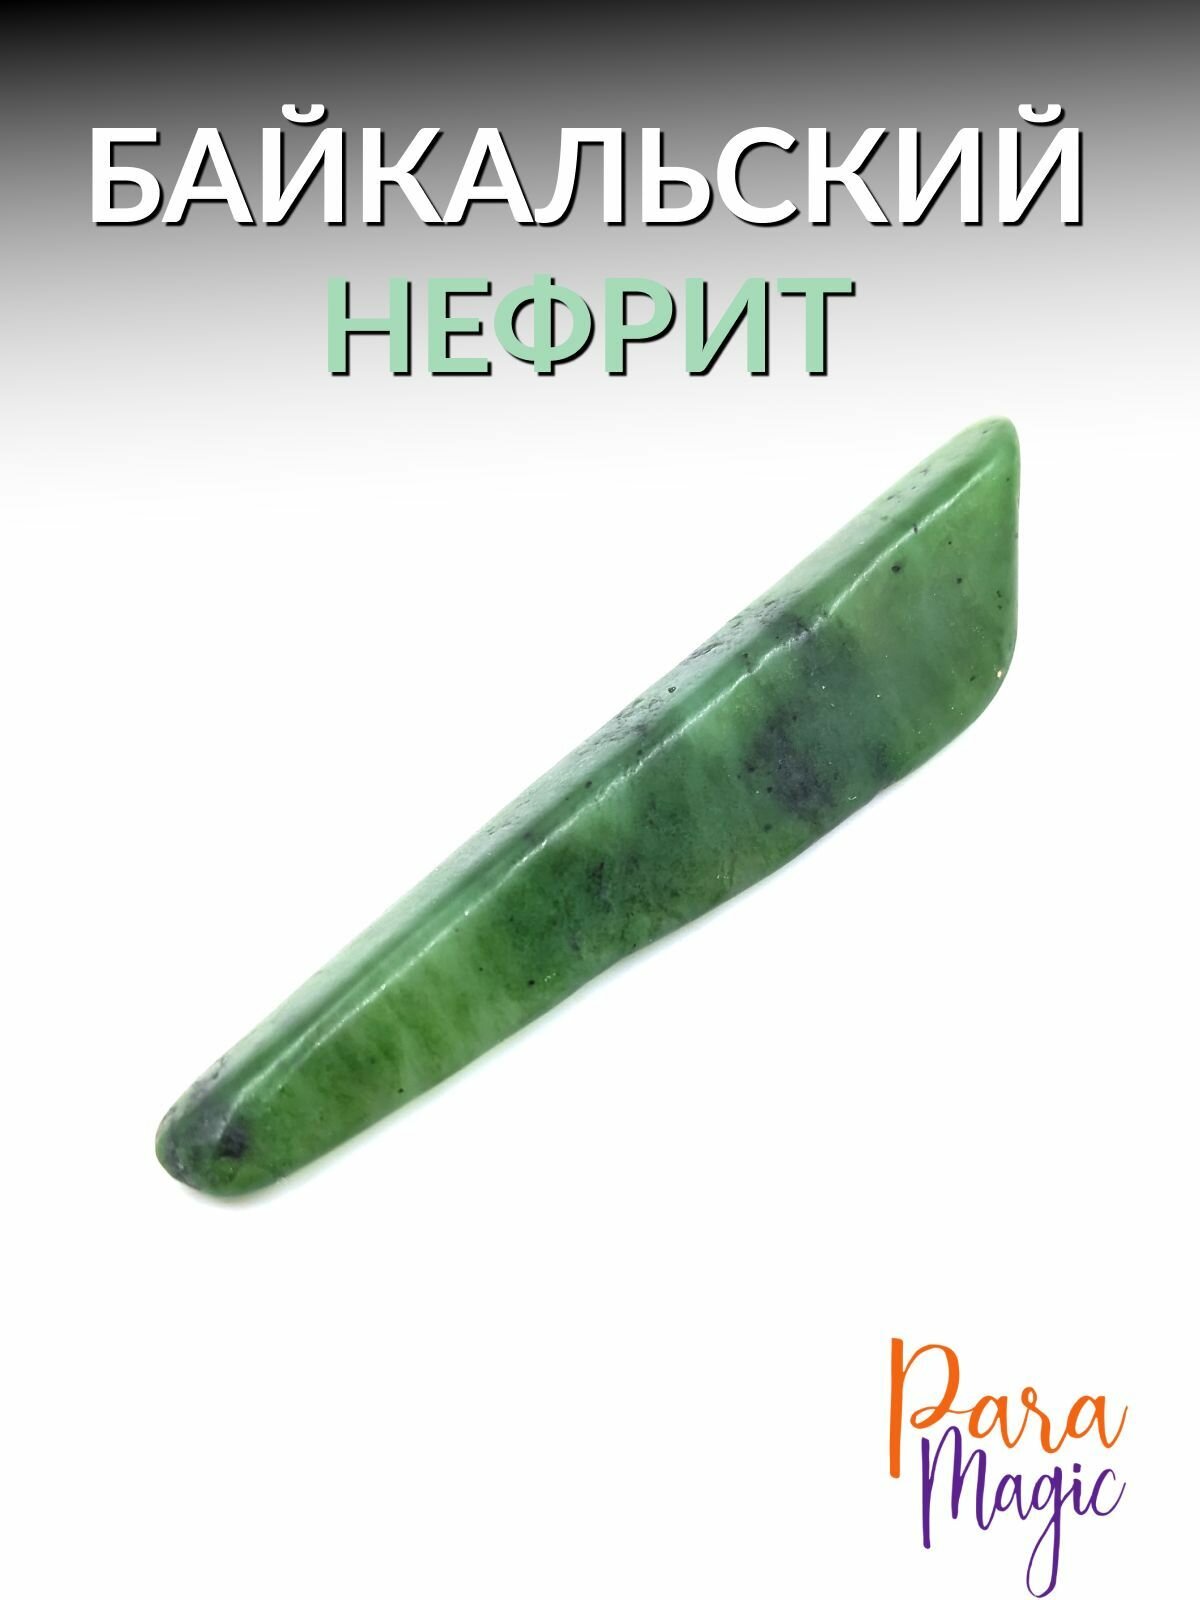 Байкальский нефрит, натуральный камень, 1шт.